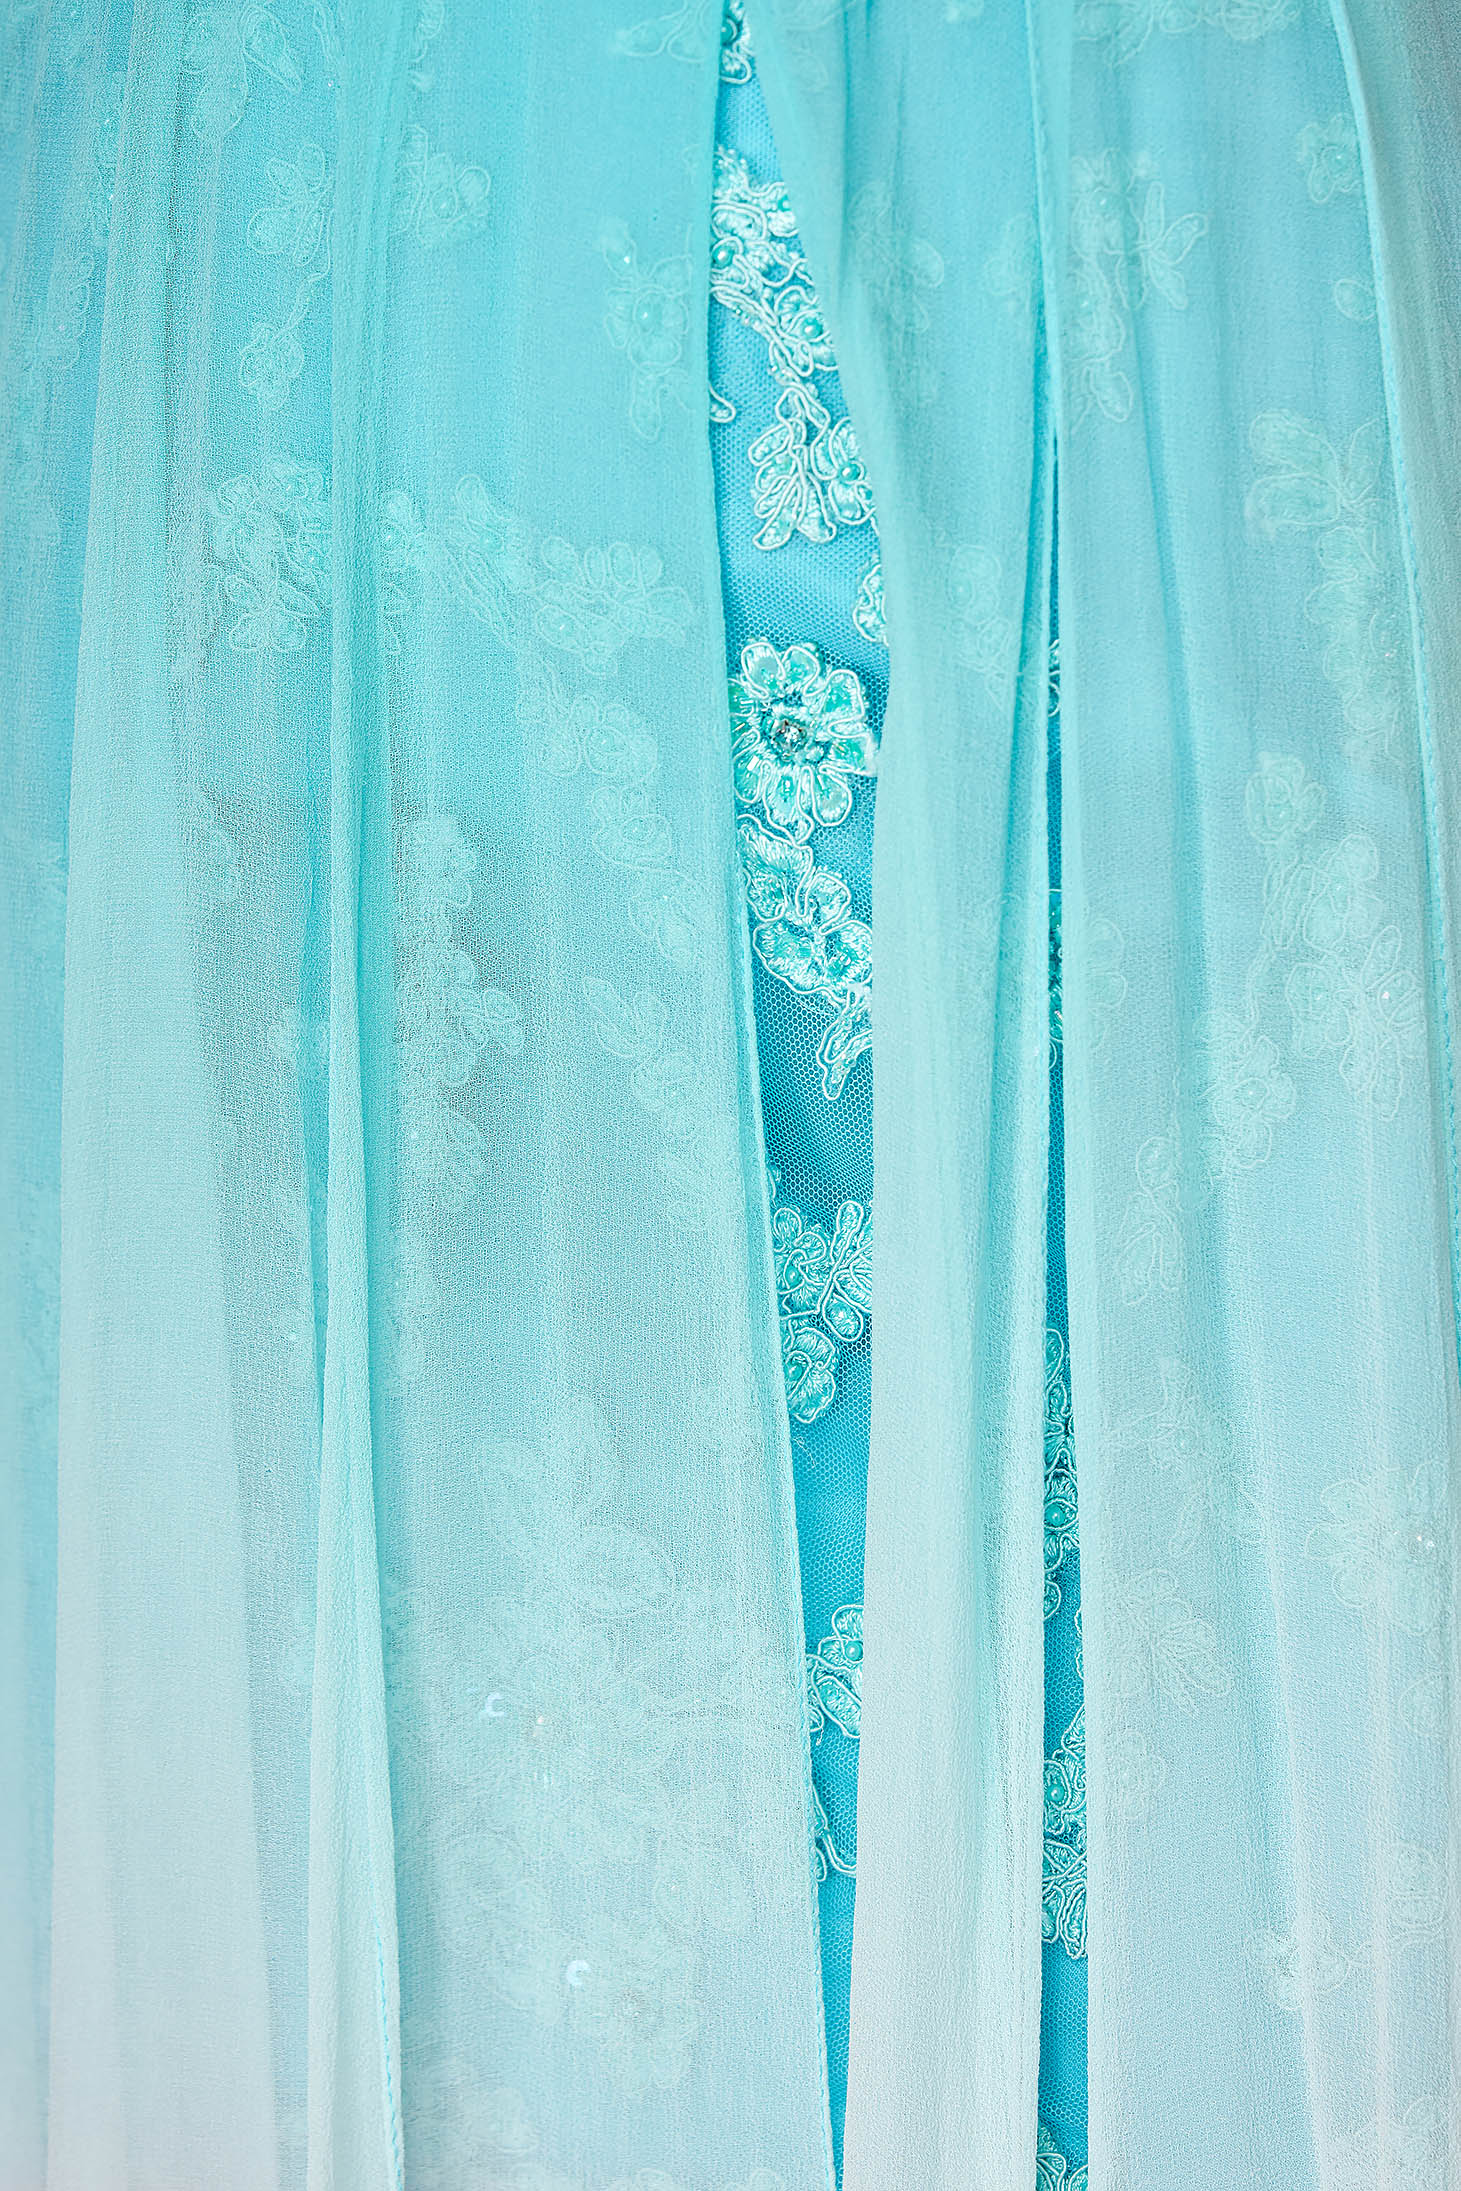 Aquakék Sherri Hill luxus ruha muszlinból flitteres díszítéssel 5 - StarShinerS.hu